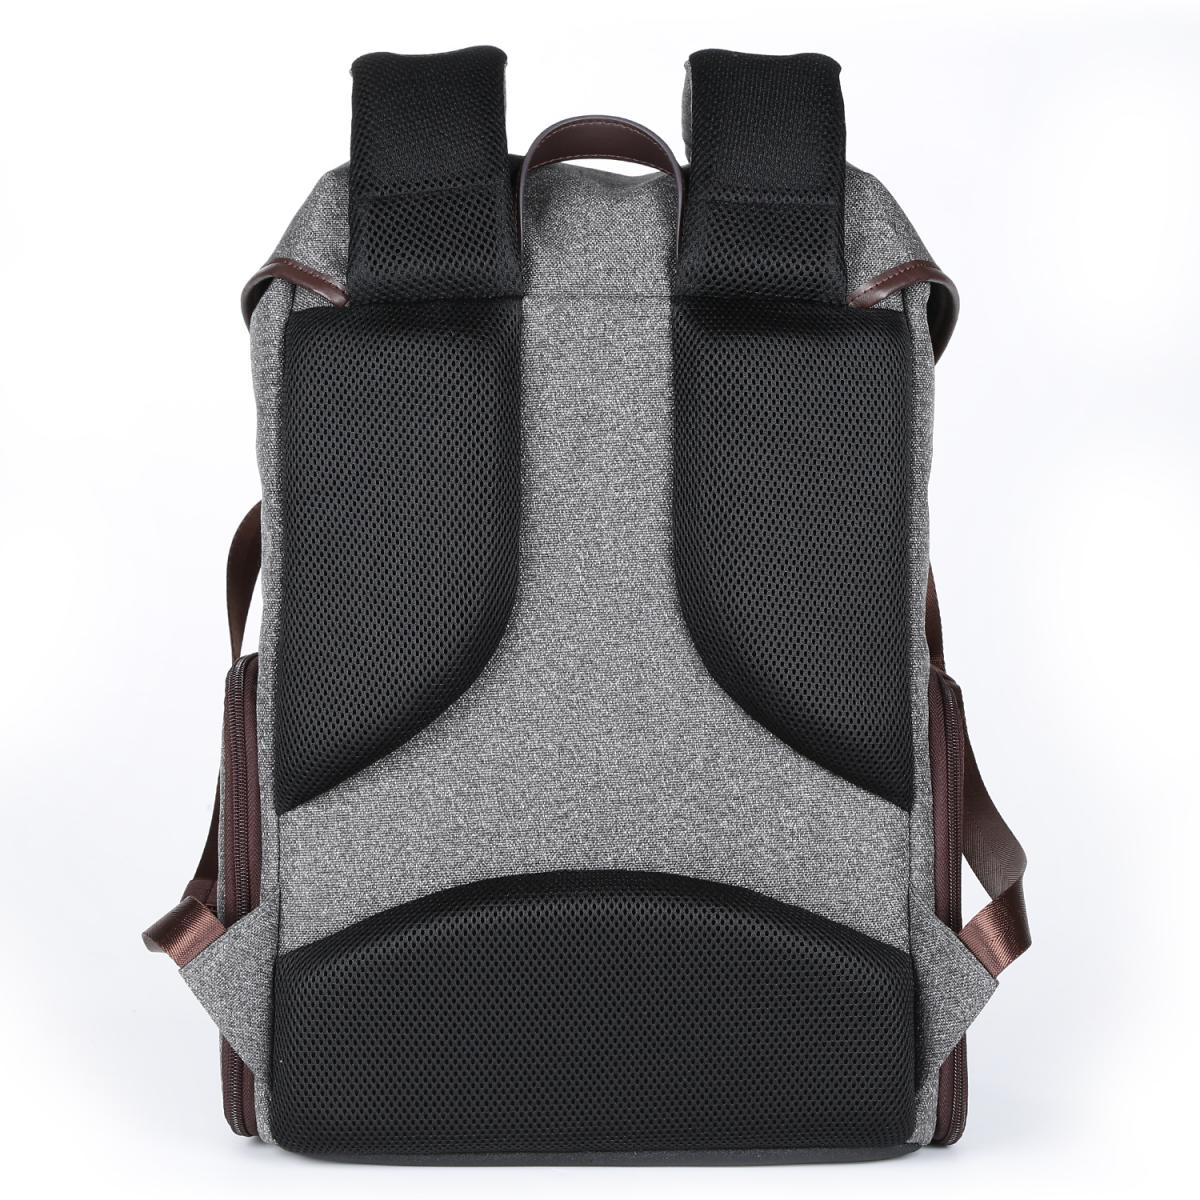 K&F Concept 13.080 DSLR Camera Backpack 